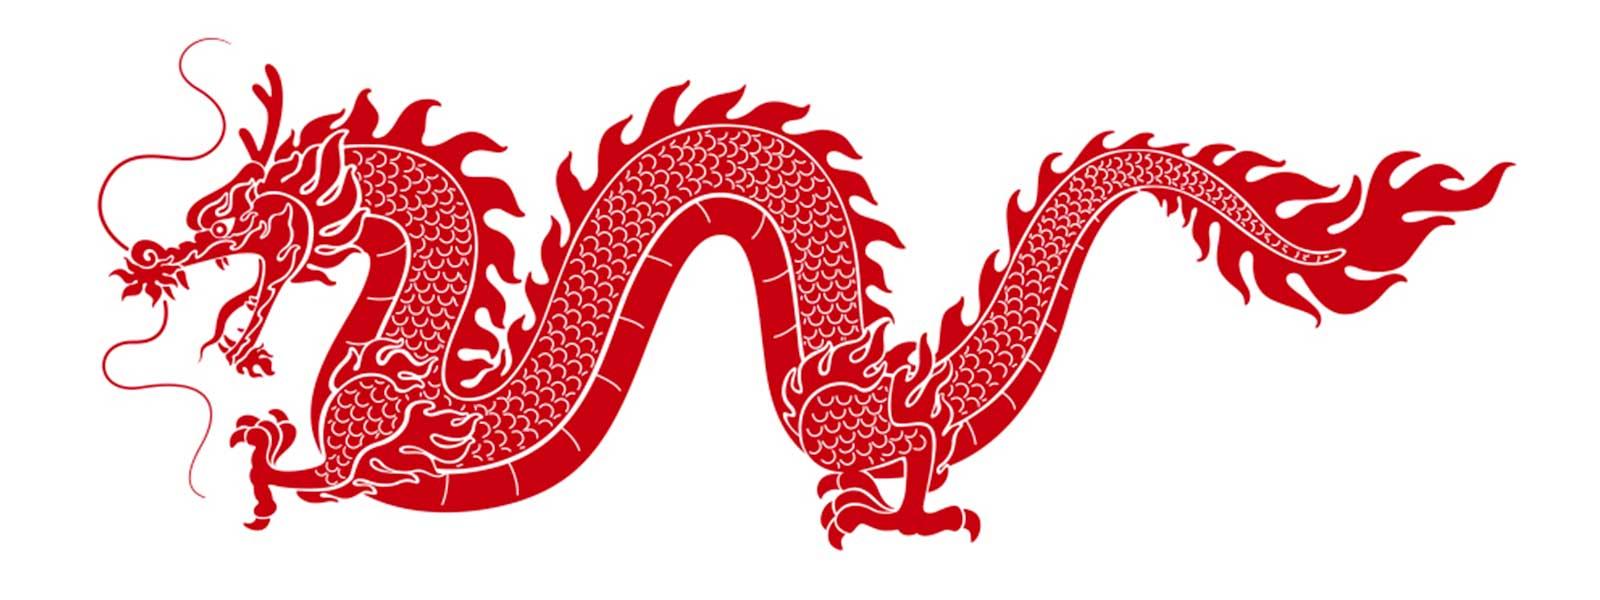 Image dragon chinois rouge dragon naga